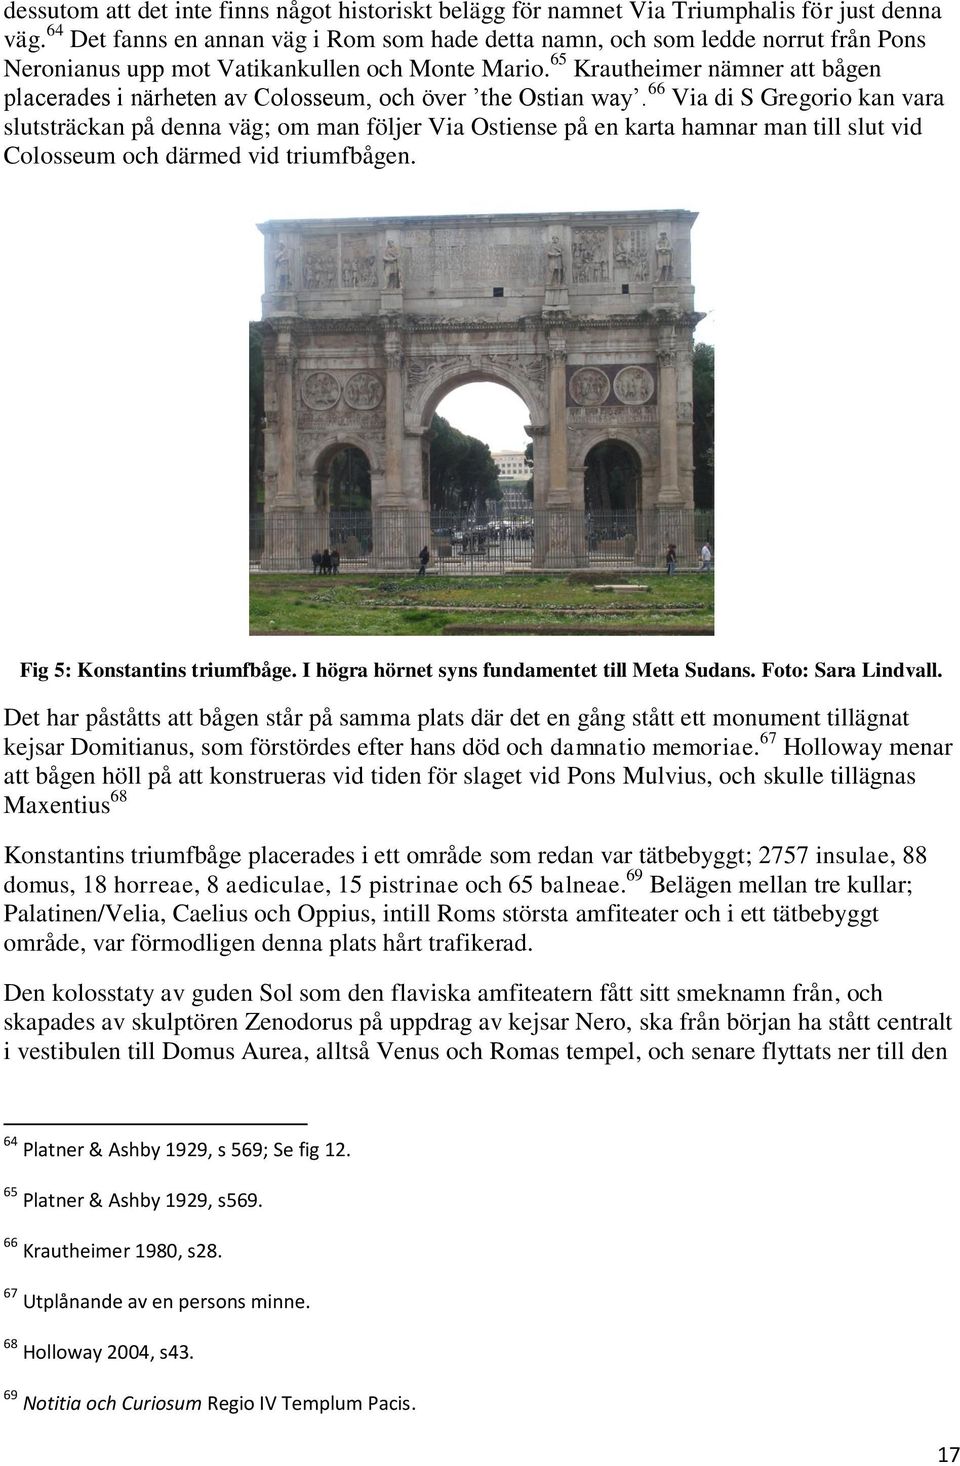 65 Krautheimer nämner att bågen placerades i närheten av Colosseum, och över the Ostian way.